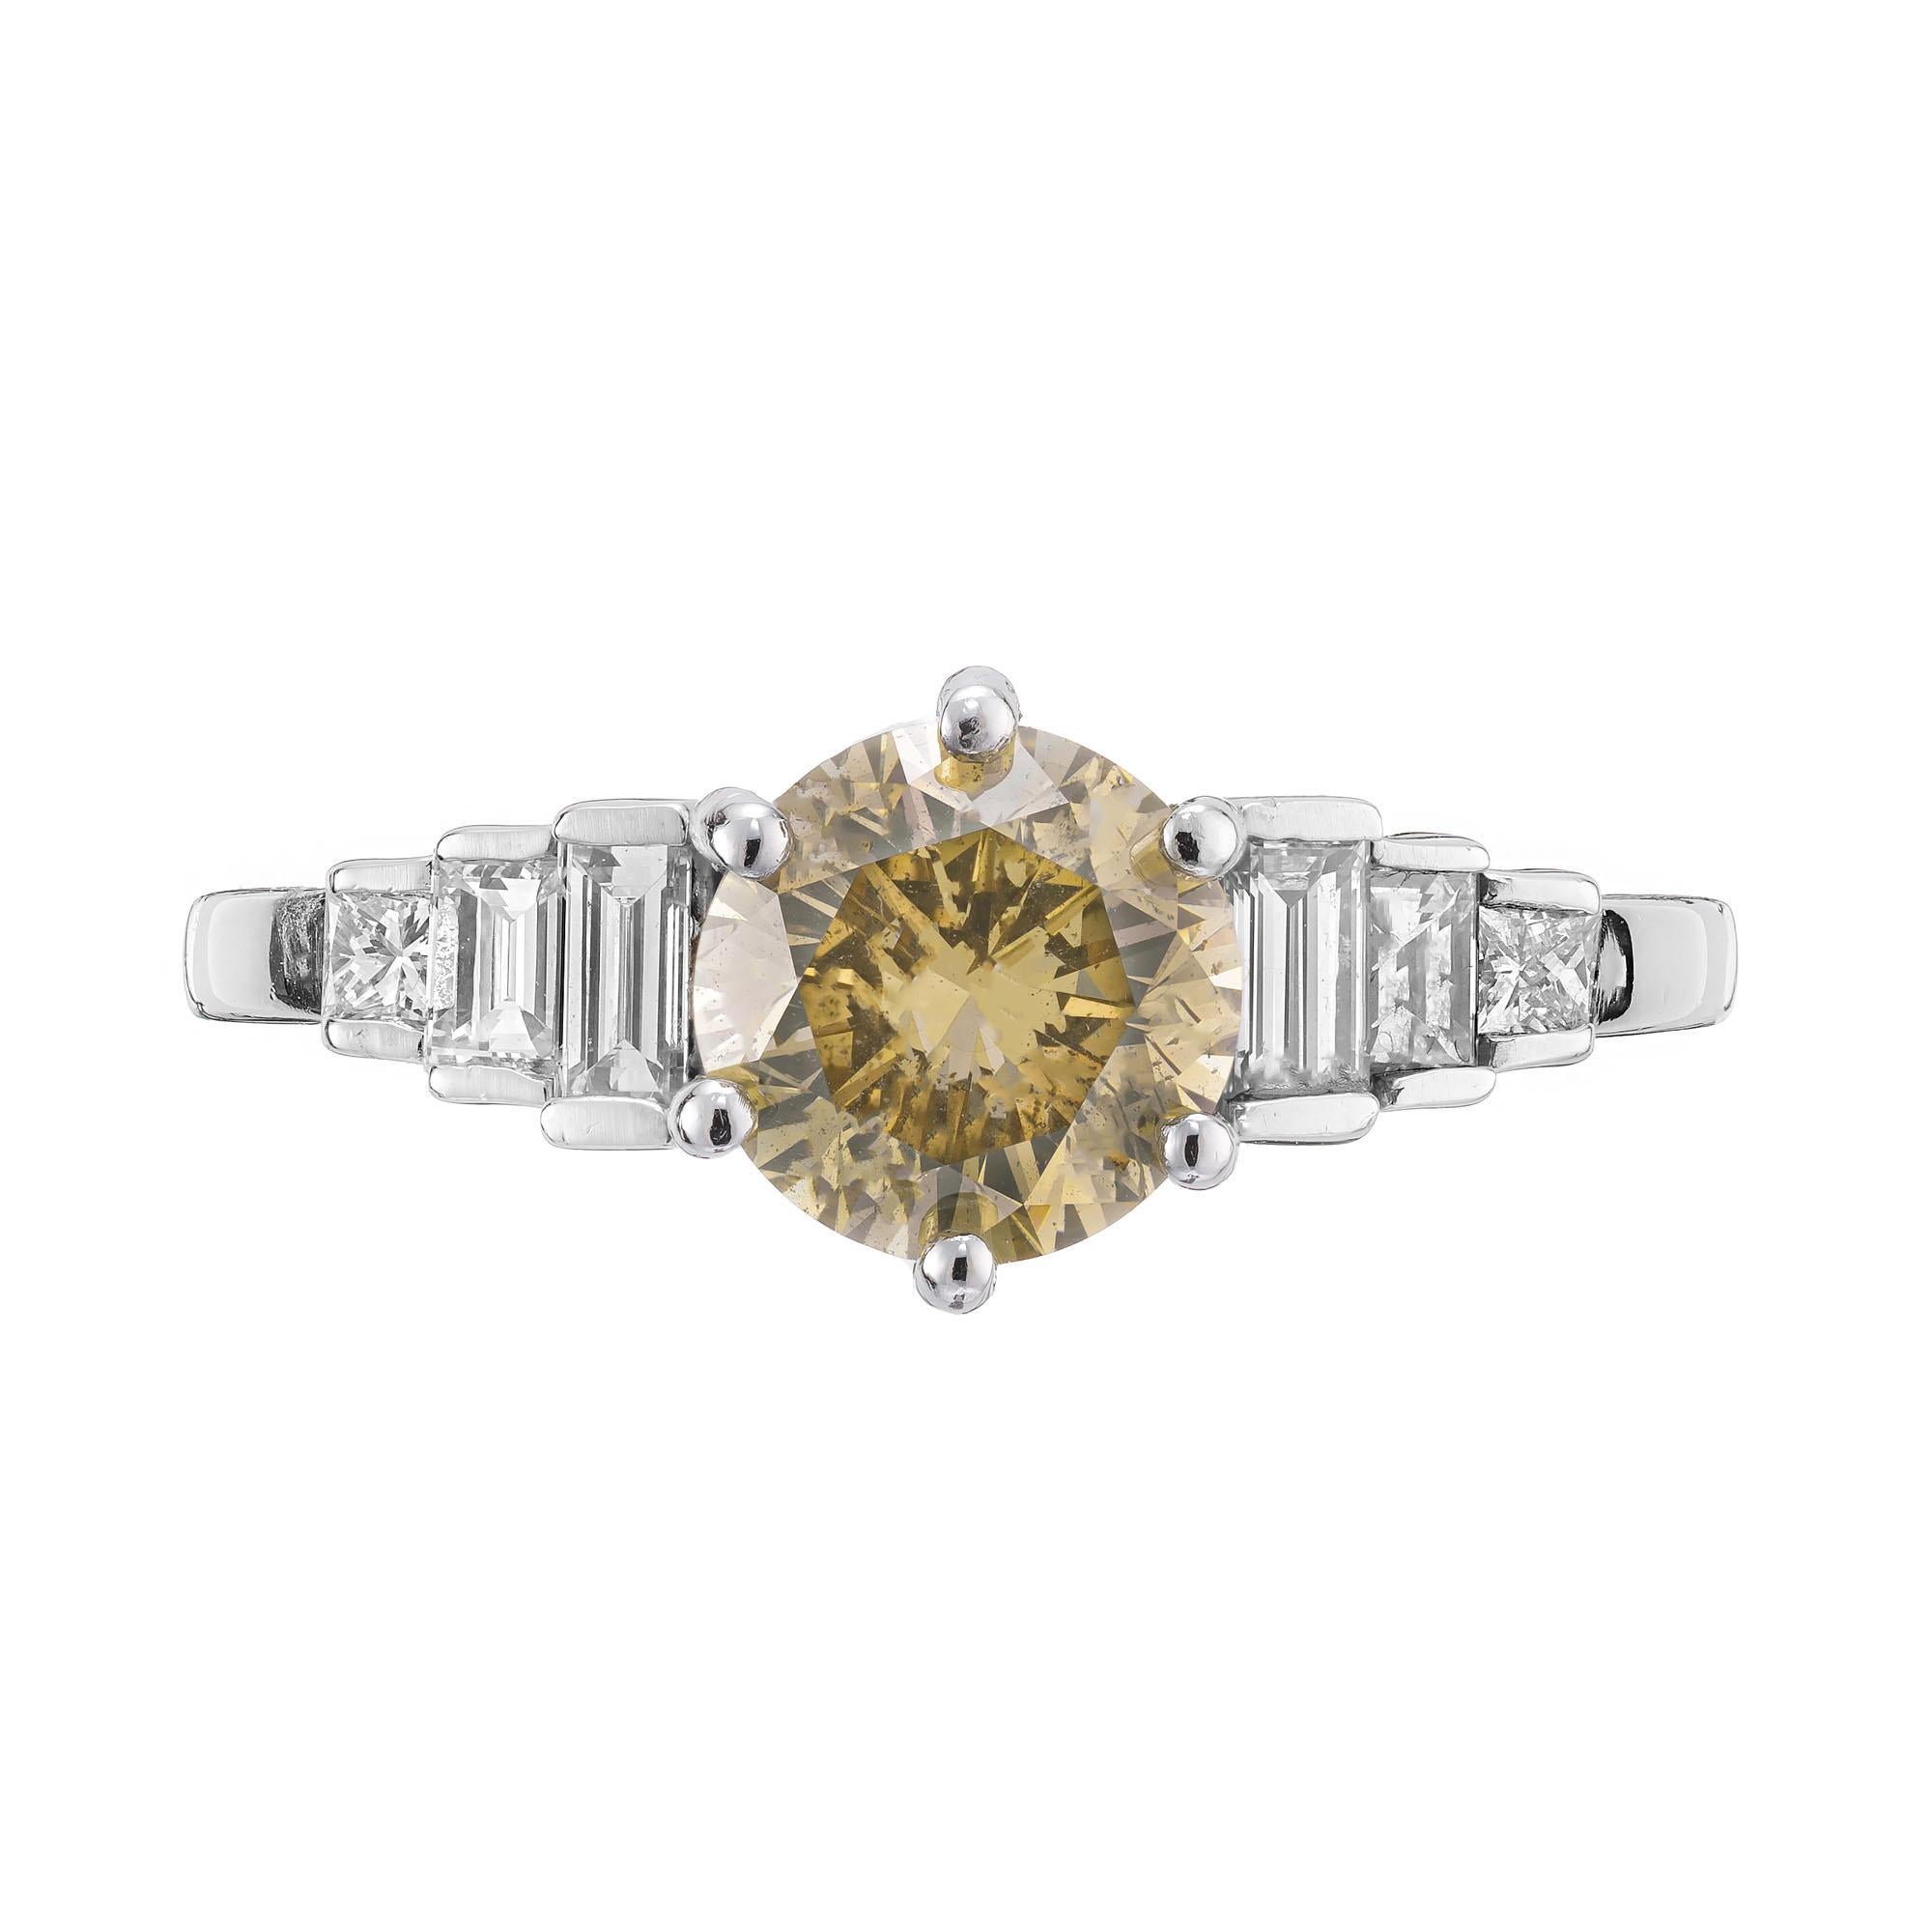 natürlicher brauner und gelber Diamant-Verlobungsring aus den 1960er Jahren. GIA-zertifizierter runder Mittelstein in einer 6-Zacken-Fassung aus Platin mit seitlichen Diamanten im Baguette- und Prinzessschliff.  

1 runder gelbbrauner Diamant,